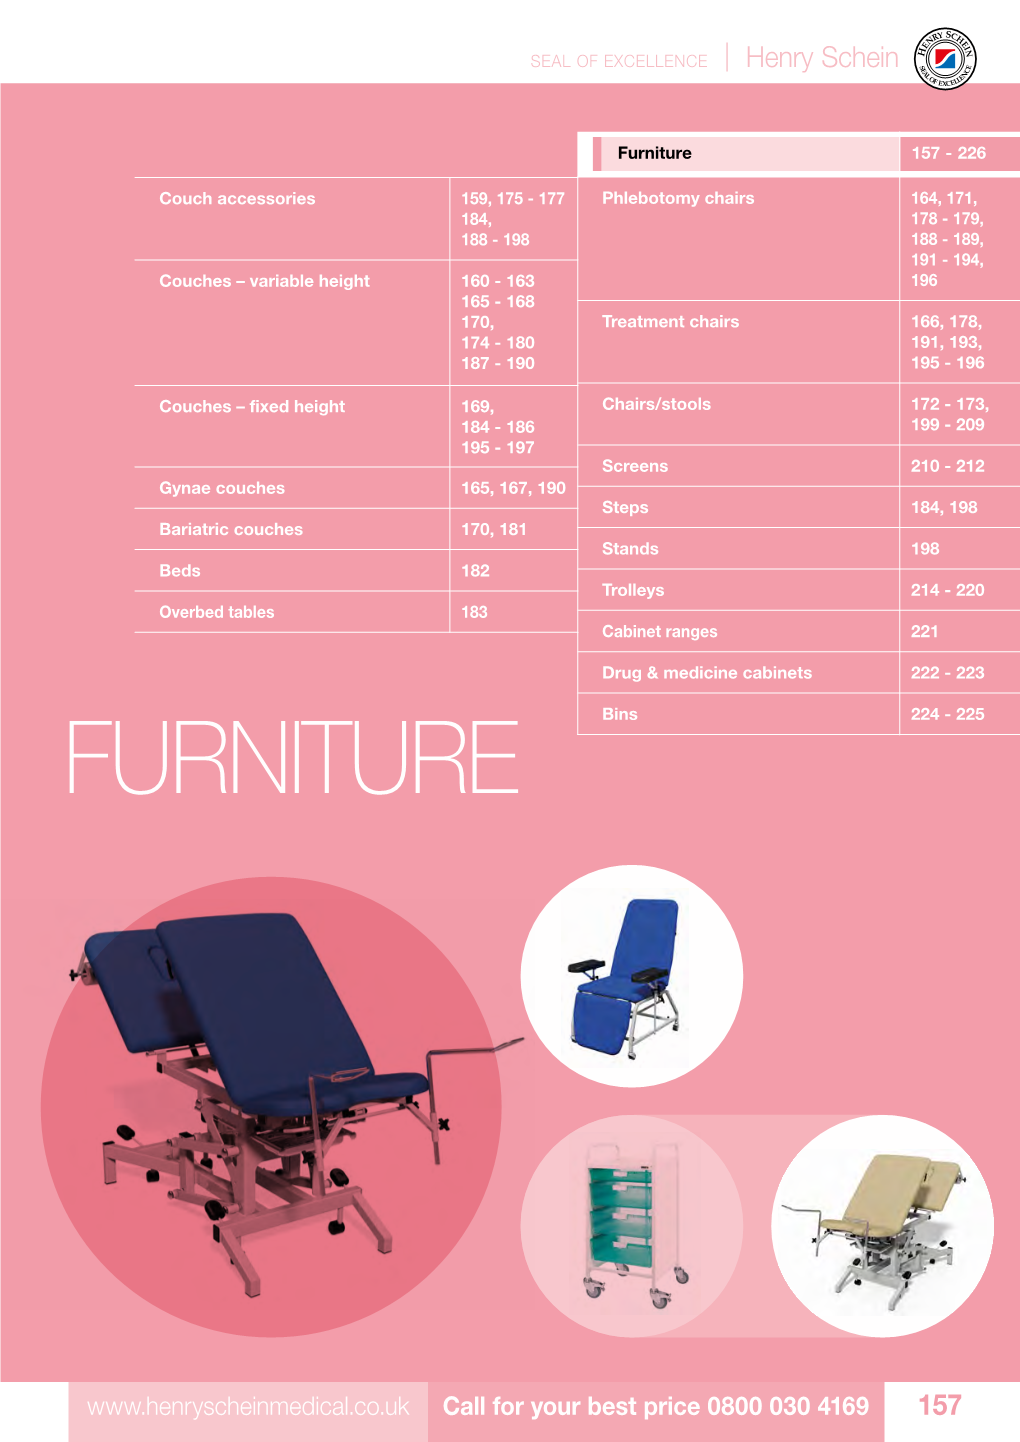 Furniture 157 - 226